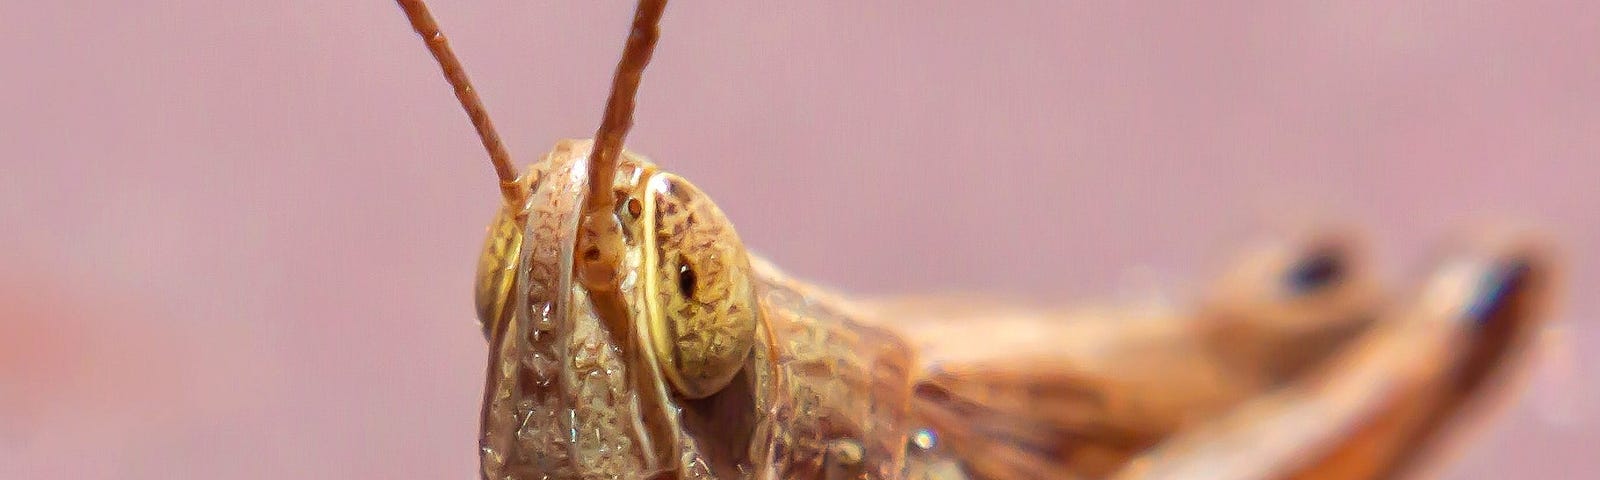 Closeup view of locust.